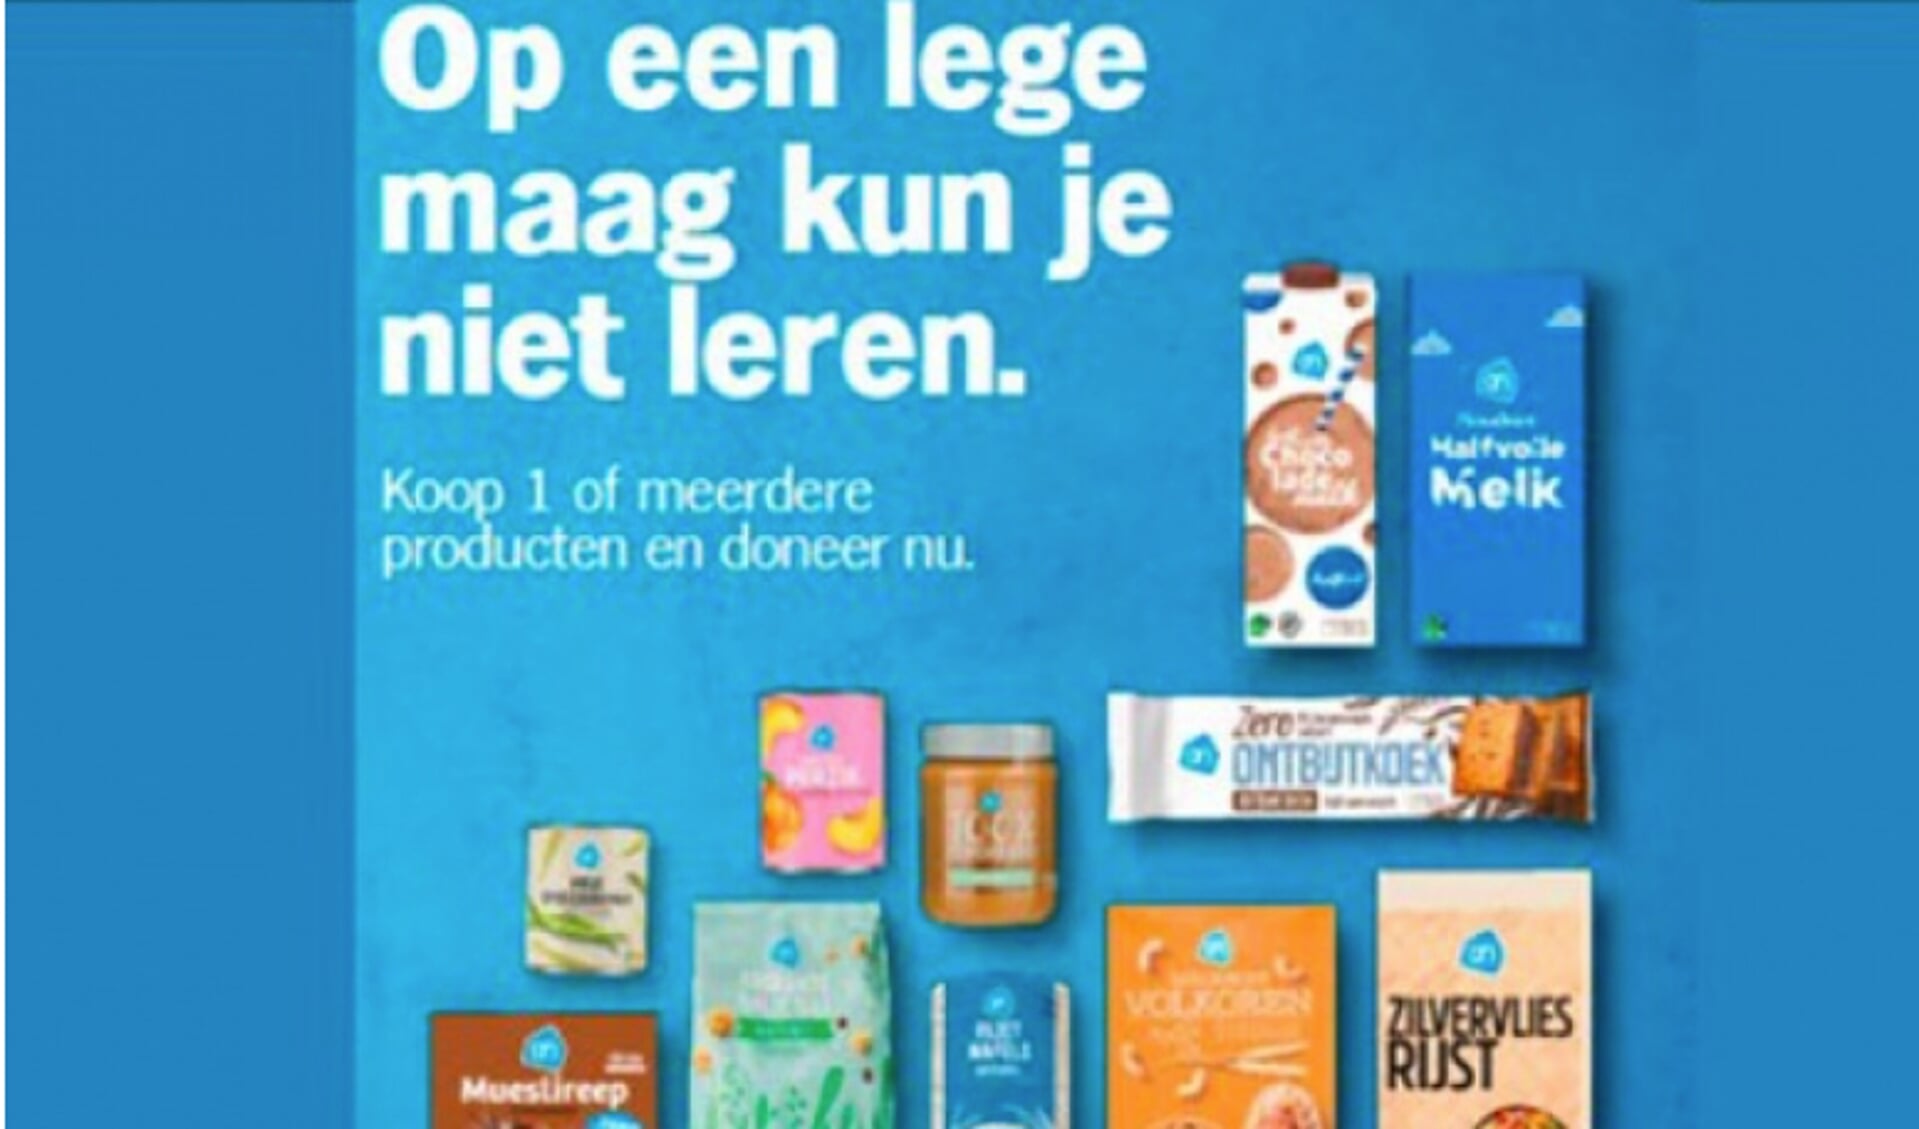 De affiche van de actie 'Op een lege maag kun je niet leren' van de Voedselbanken.